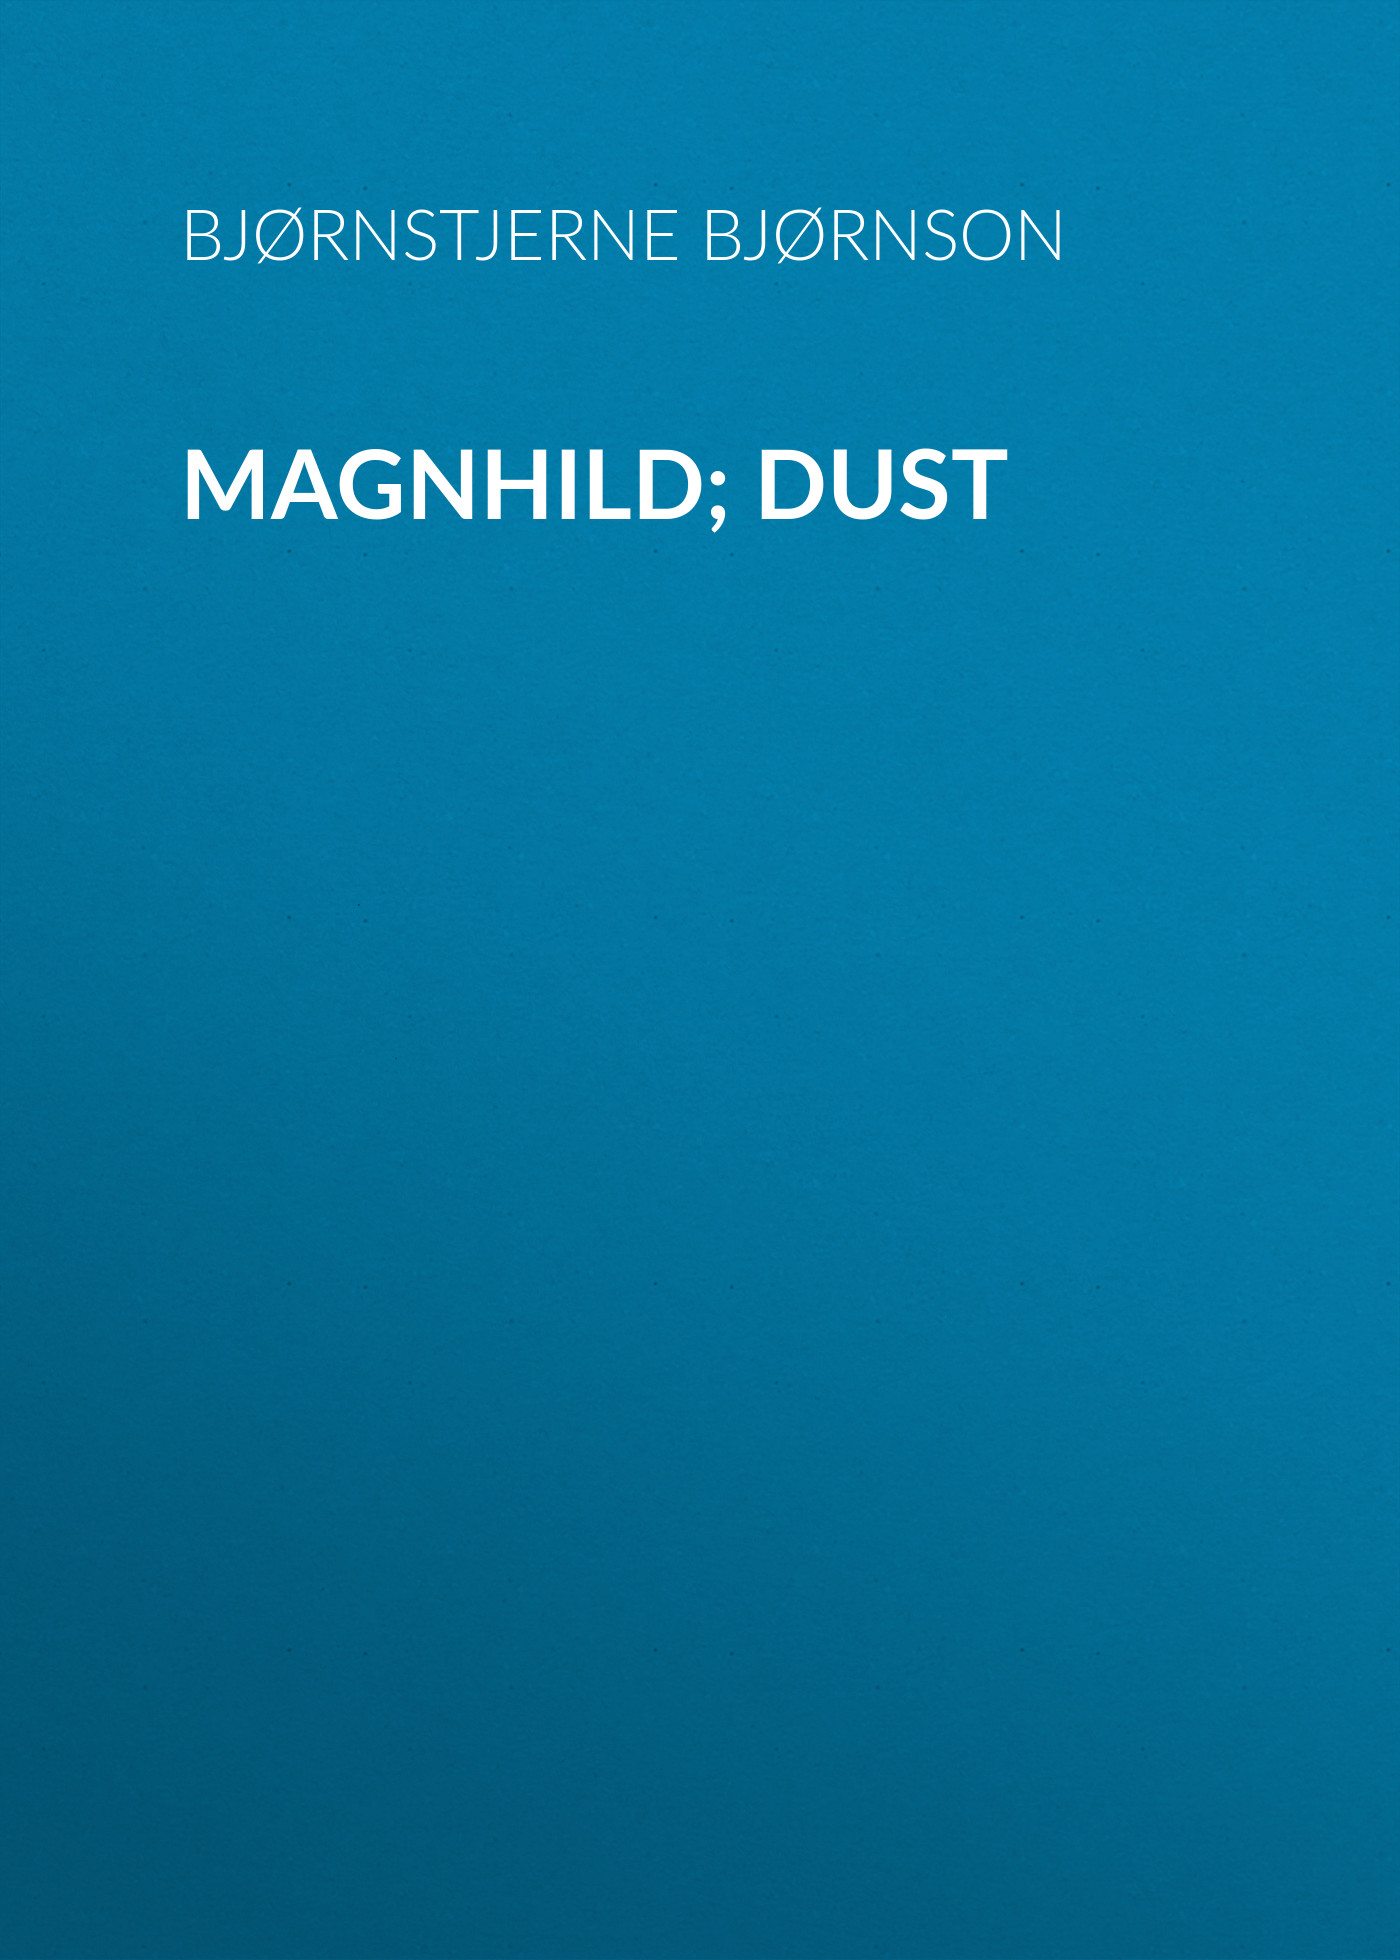 Книга Magnhild; Dust из серии , созданная Bjørnstjerne Bjørnson, может относится к жанру Зарубежная старинная литература, Зарубежная классика. Стоимость электронной книги Magnhild; Dust с идентификатором 24178556 составляет 0 руб.